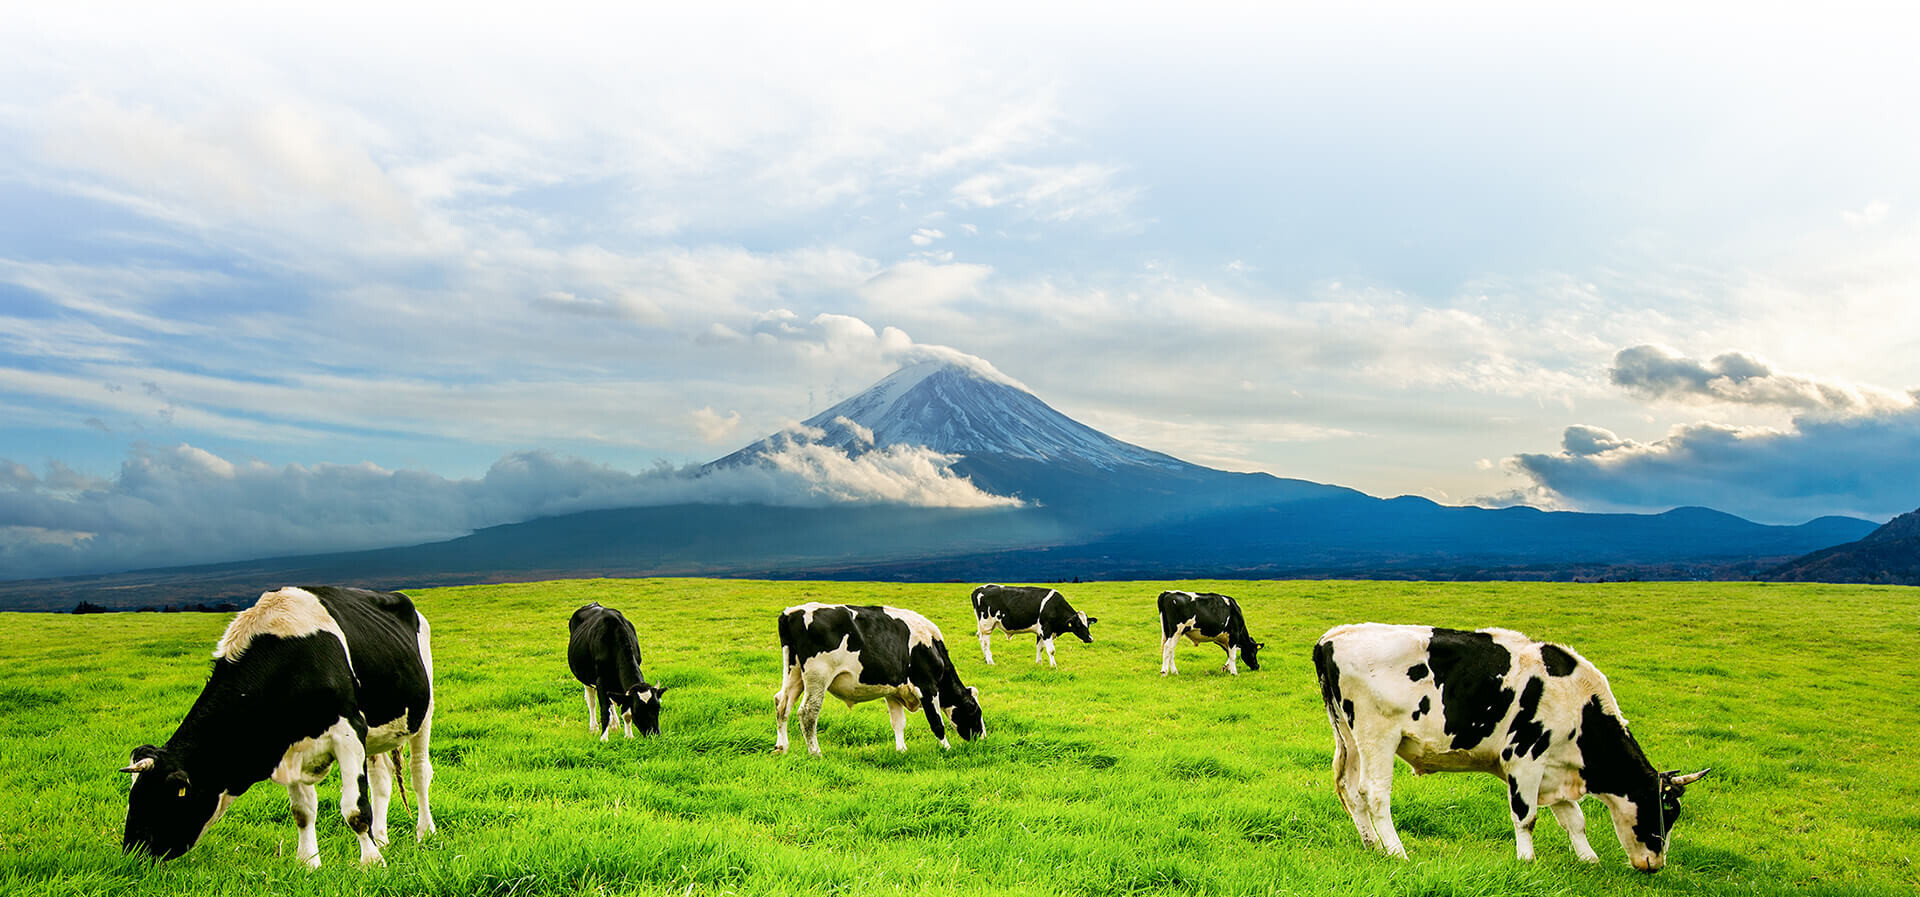 Минсельхозпрод изменил экспортные цены на некоторую молочную продукцию